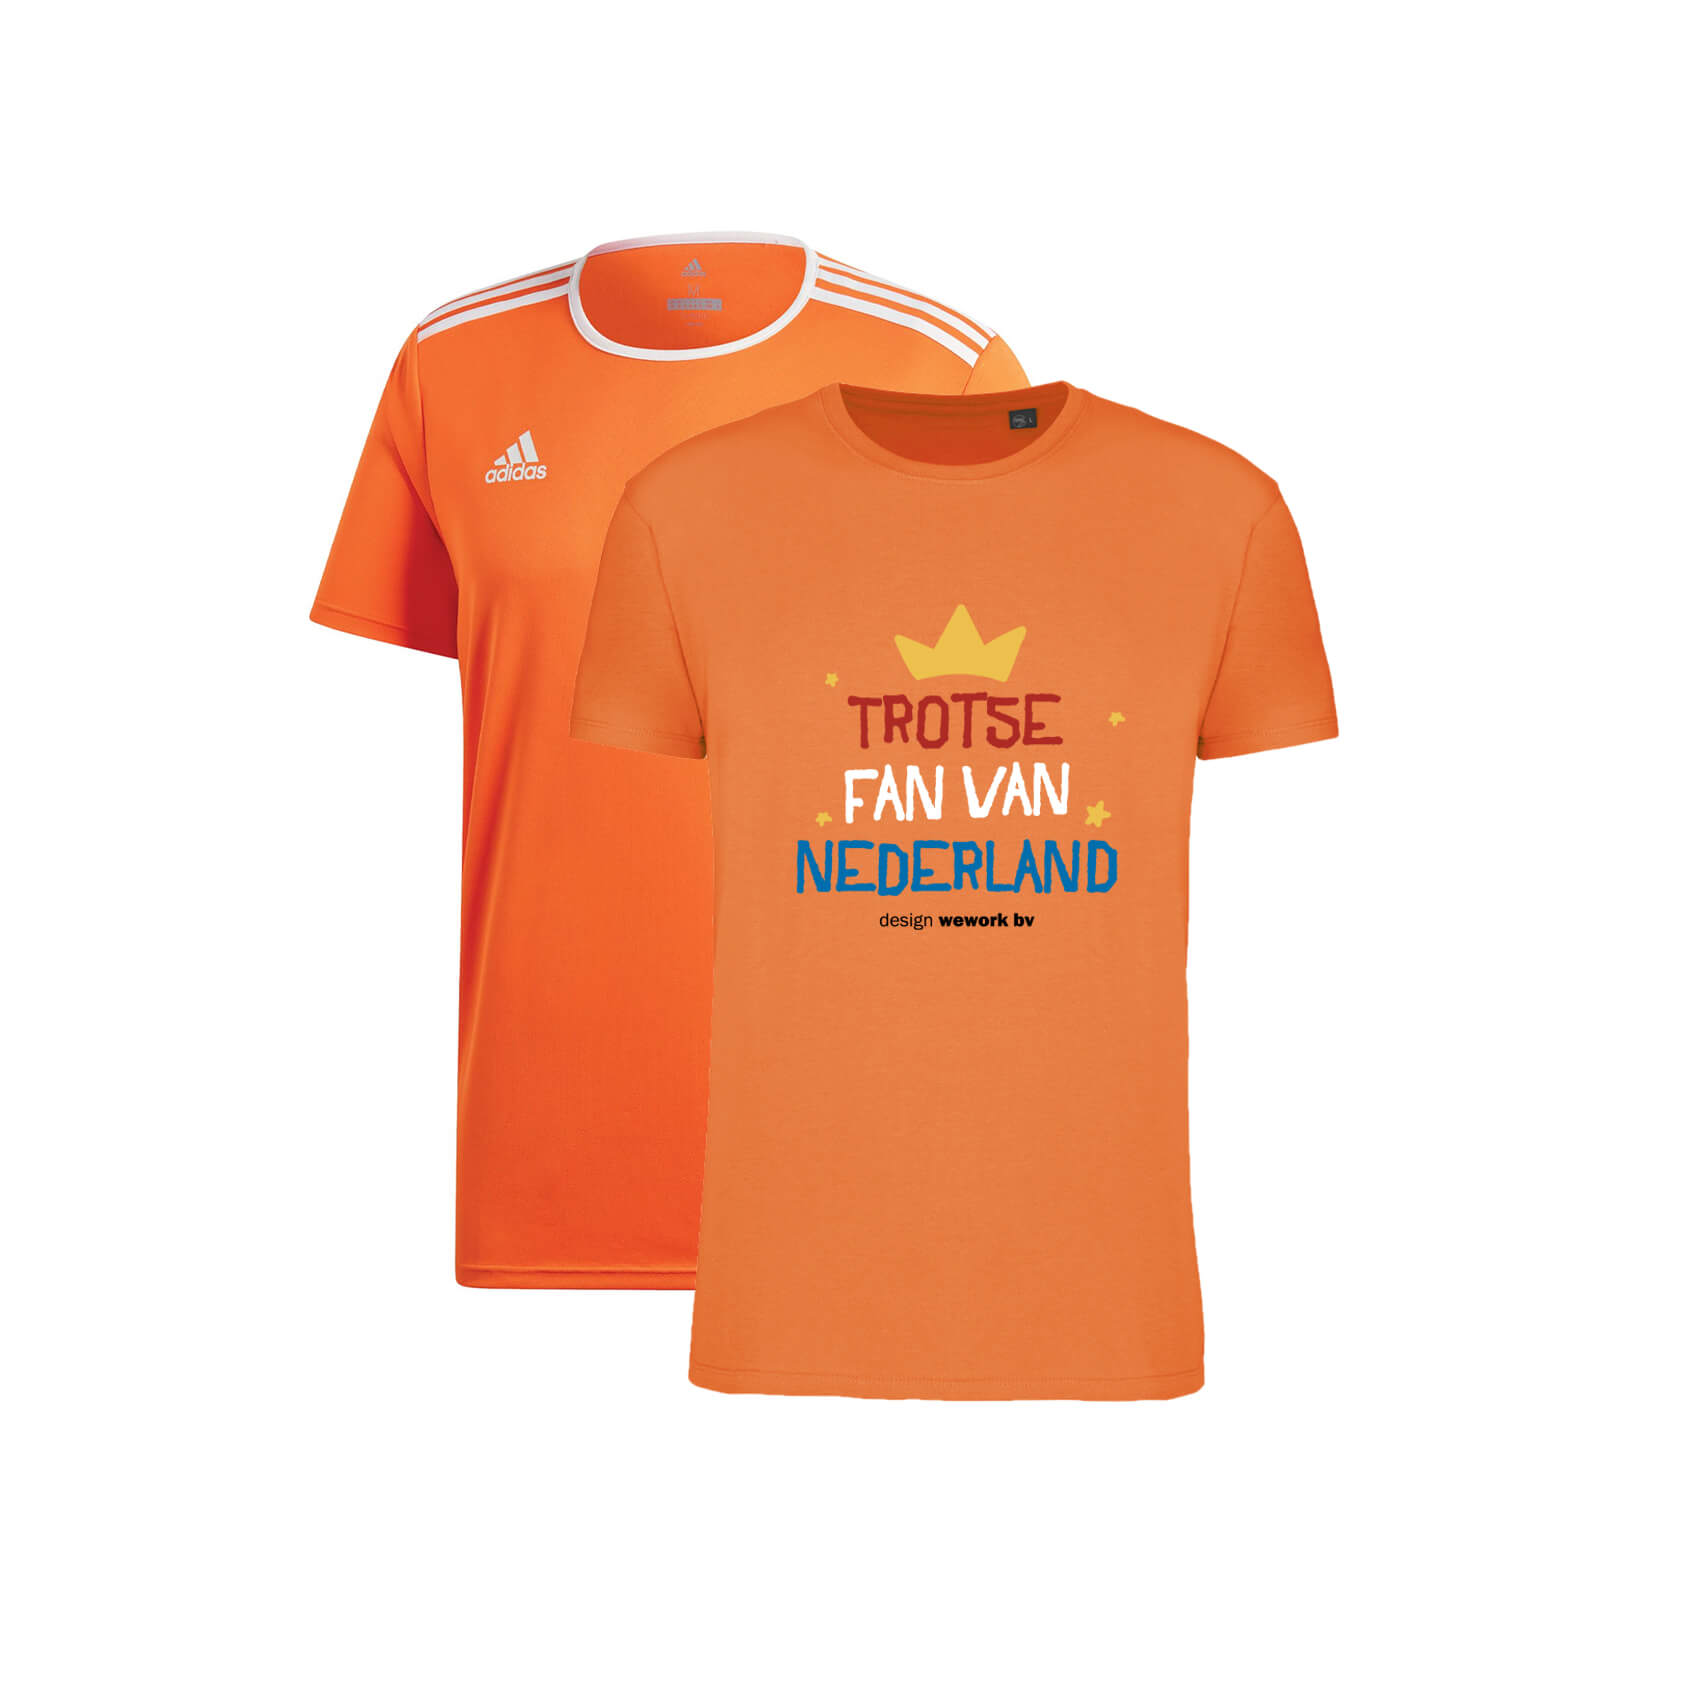 Oranje shirts bedrukken - uit 4 modellen vanaf 5 stuks gedrukt!